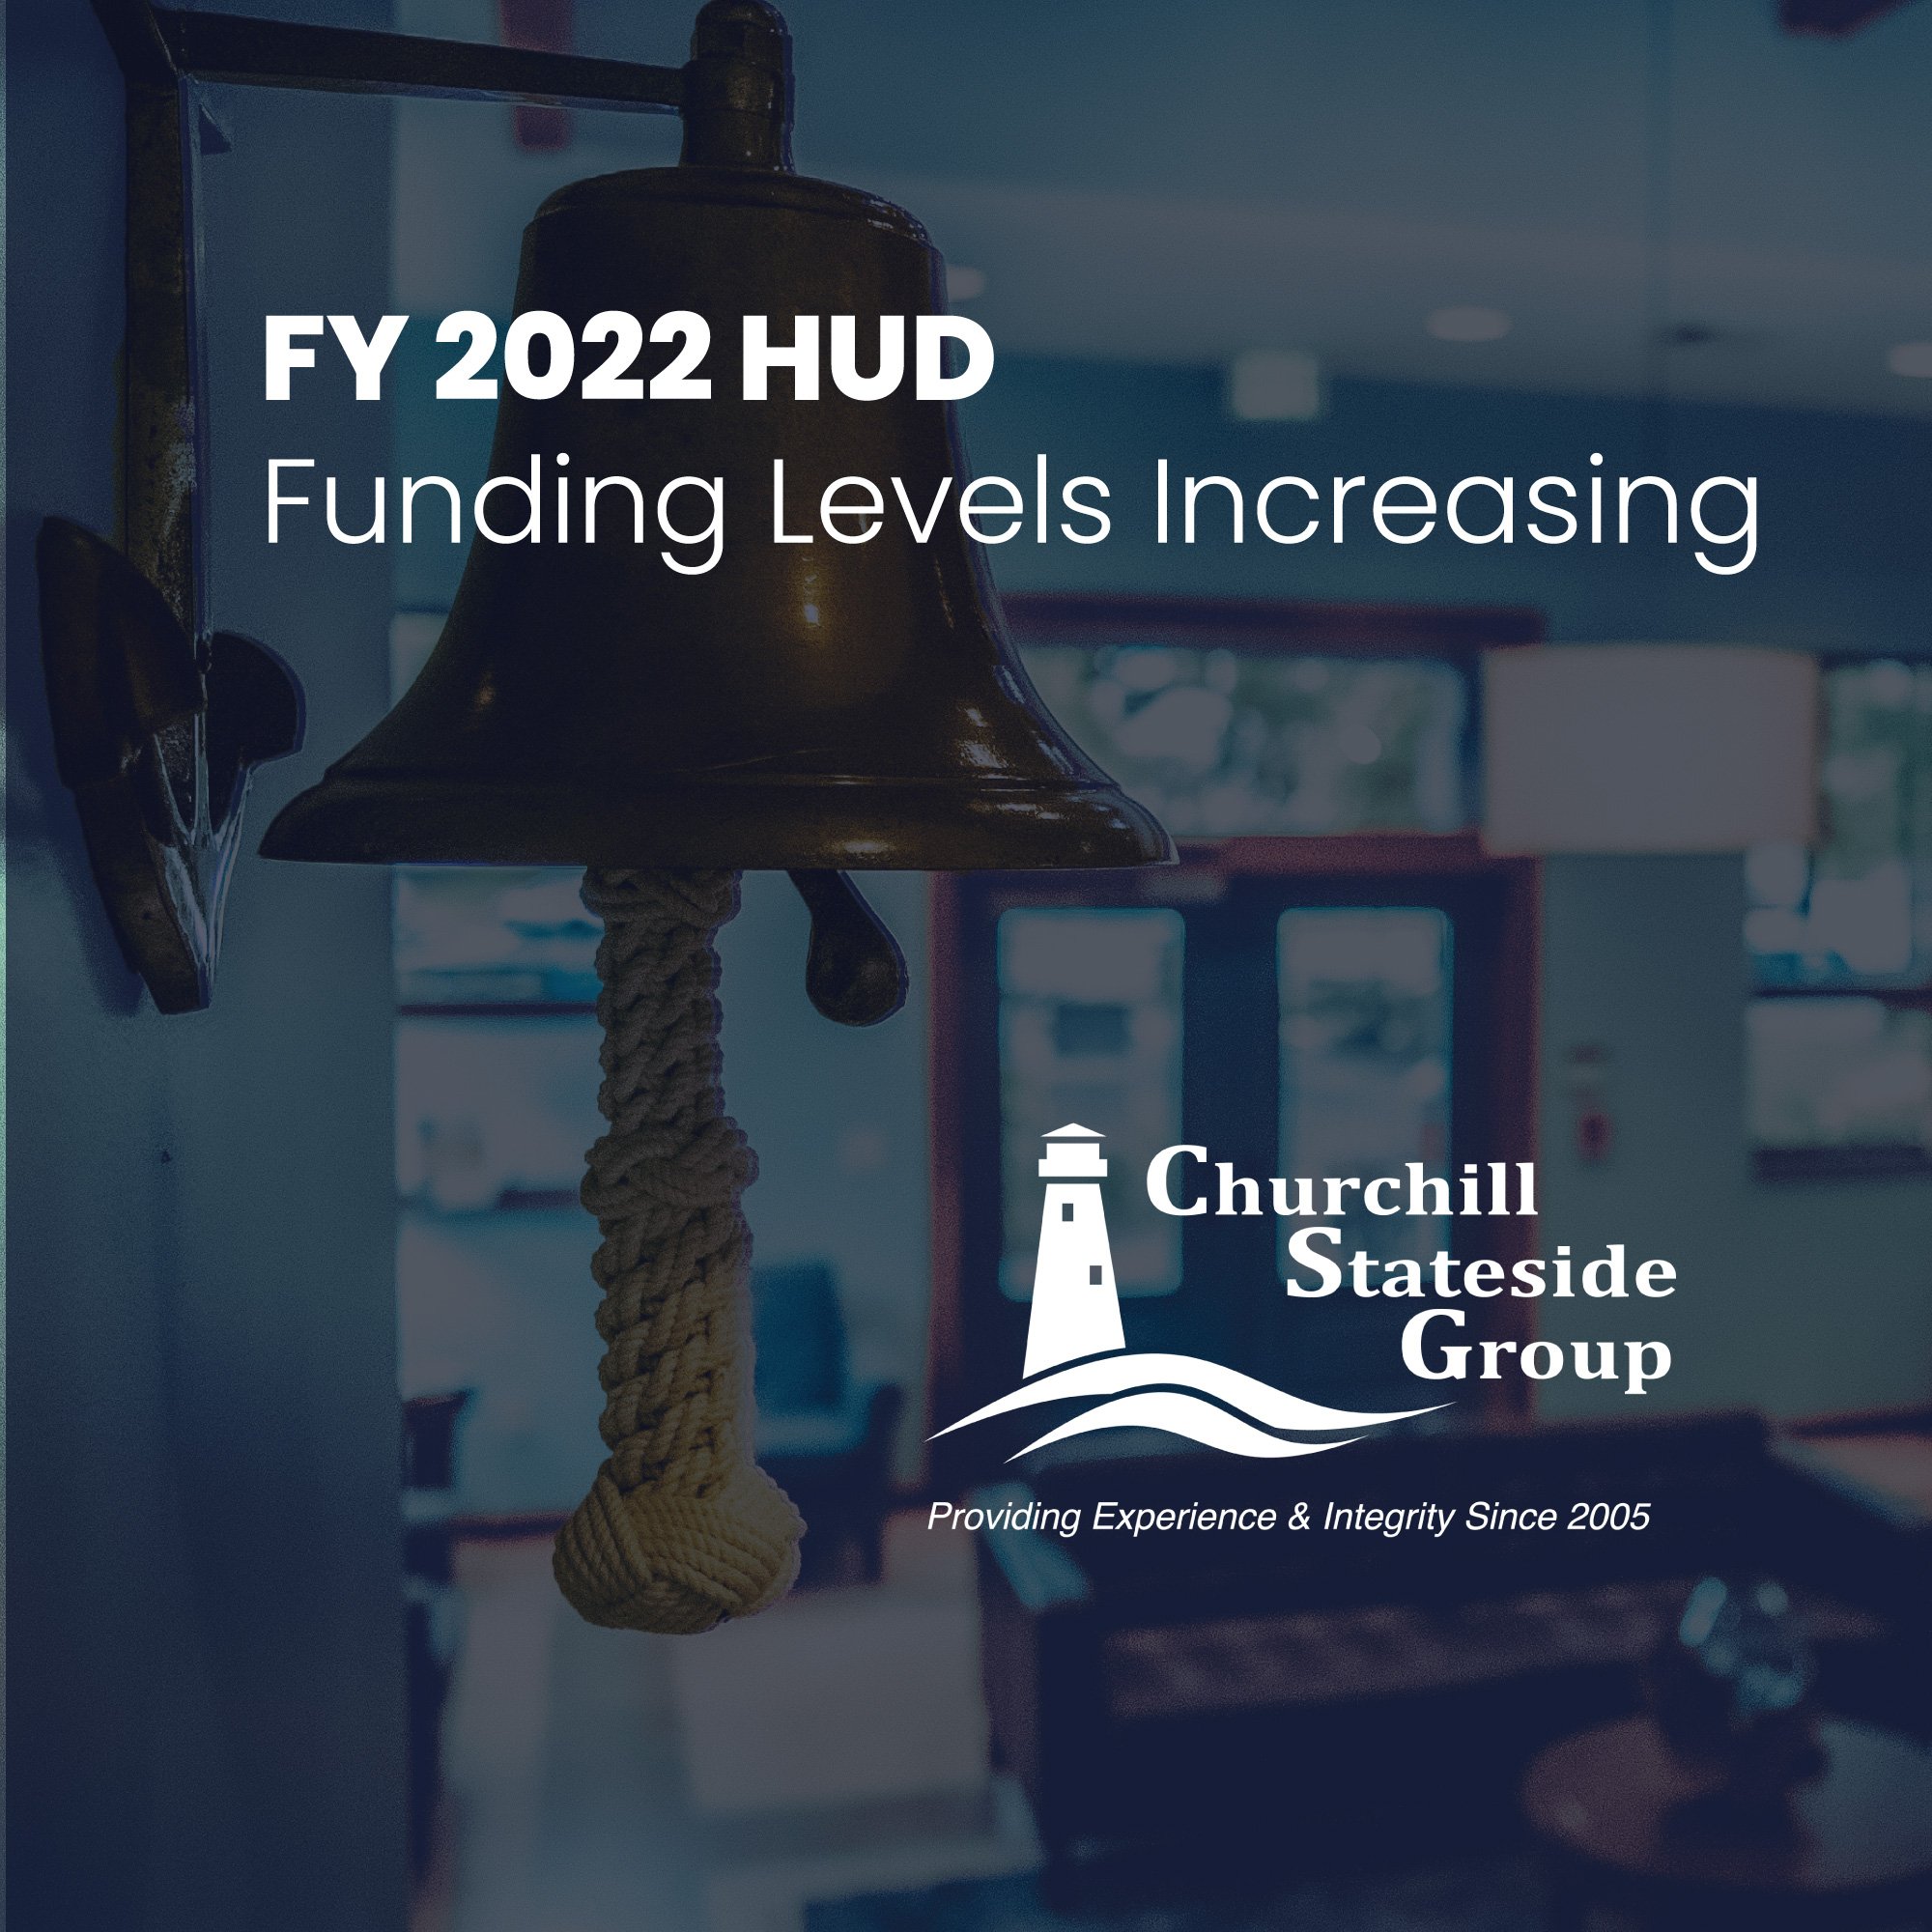 FY 2022 HUD Funding Levels Increasing